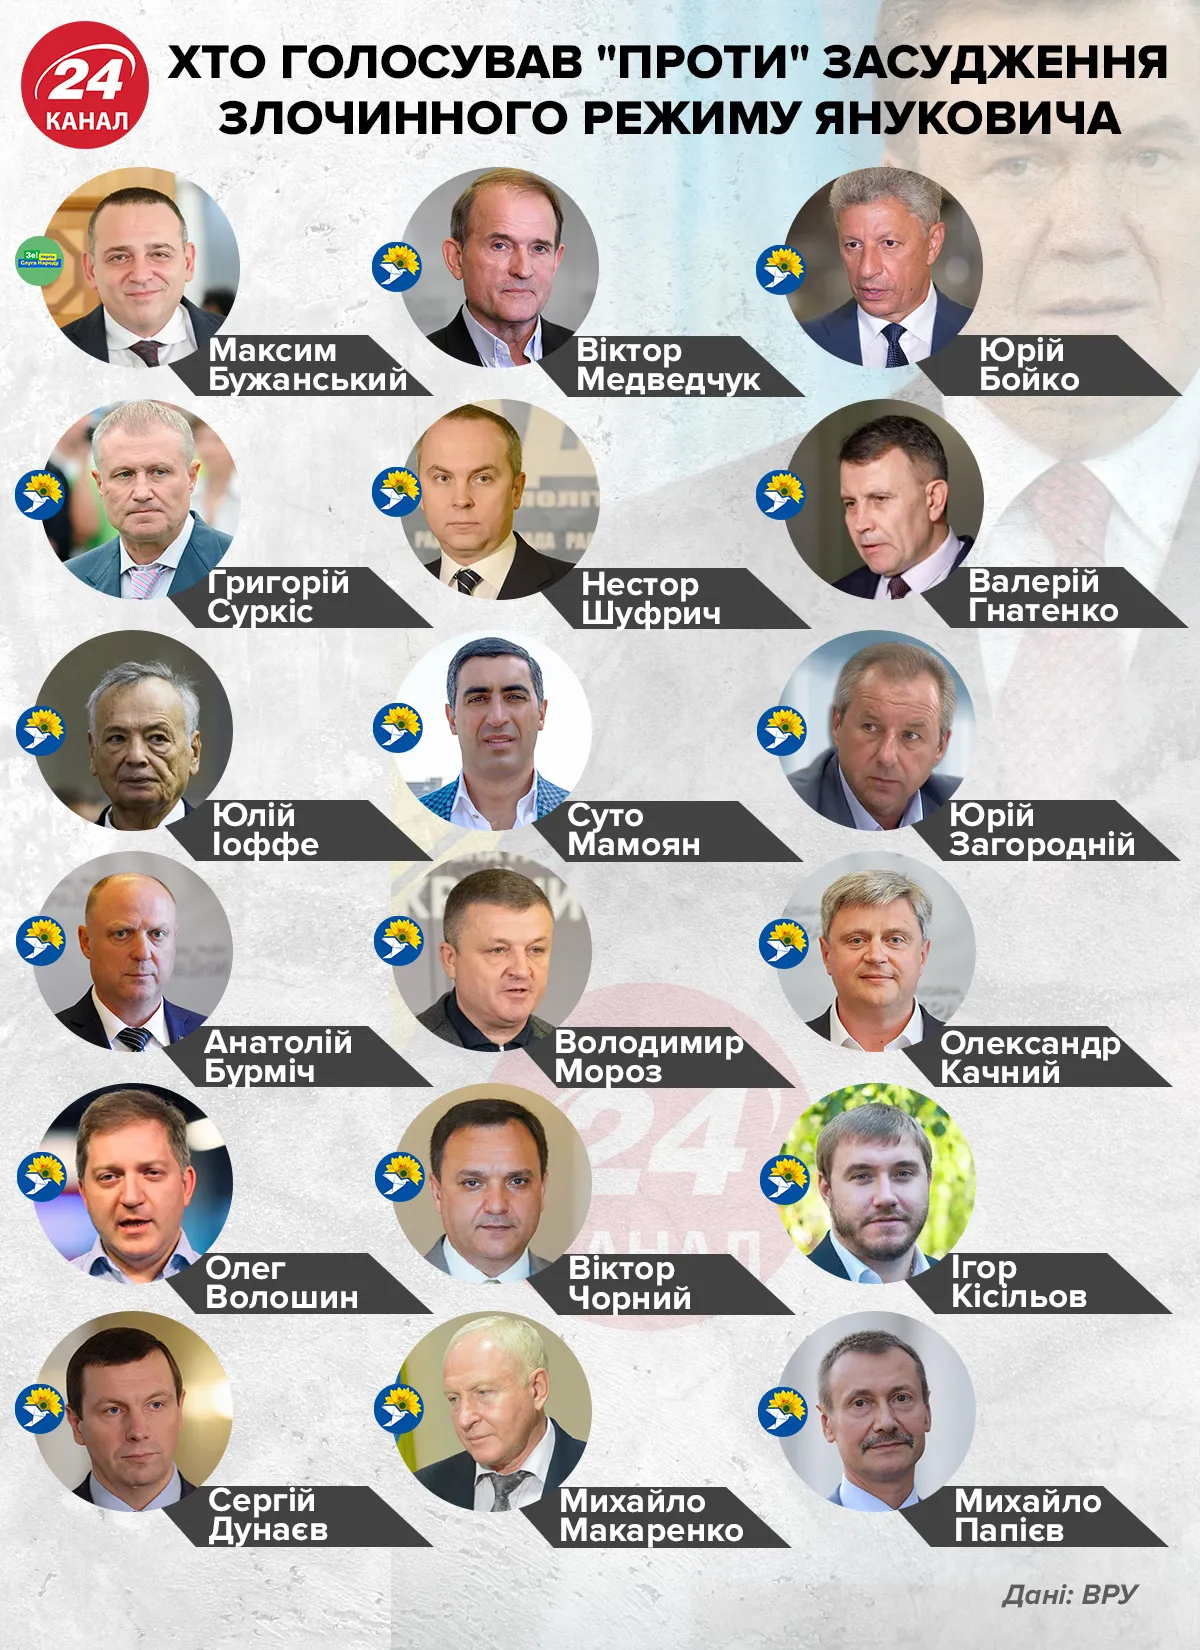 Хто голосував "проти" засудження режиму Януковича / Інфографіка 24 каналу